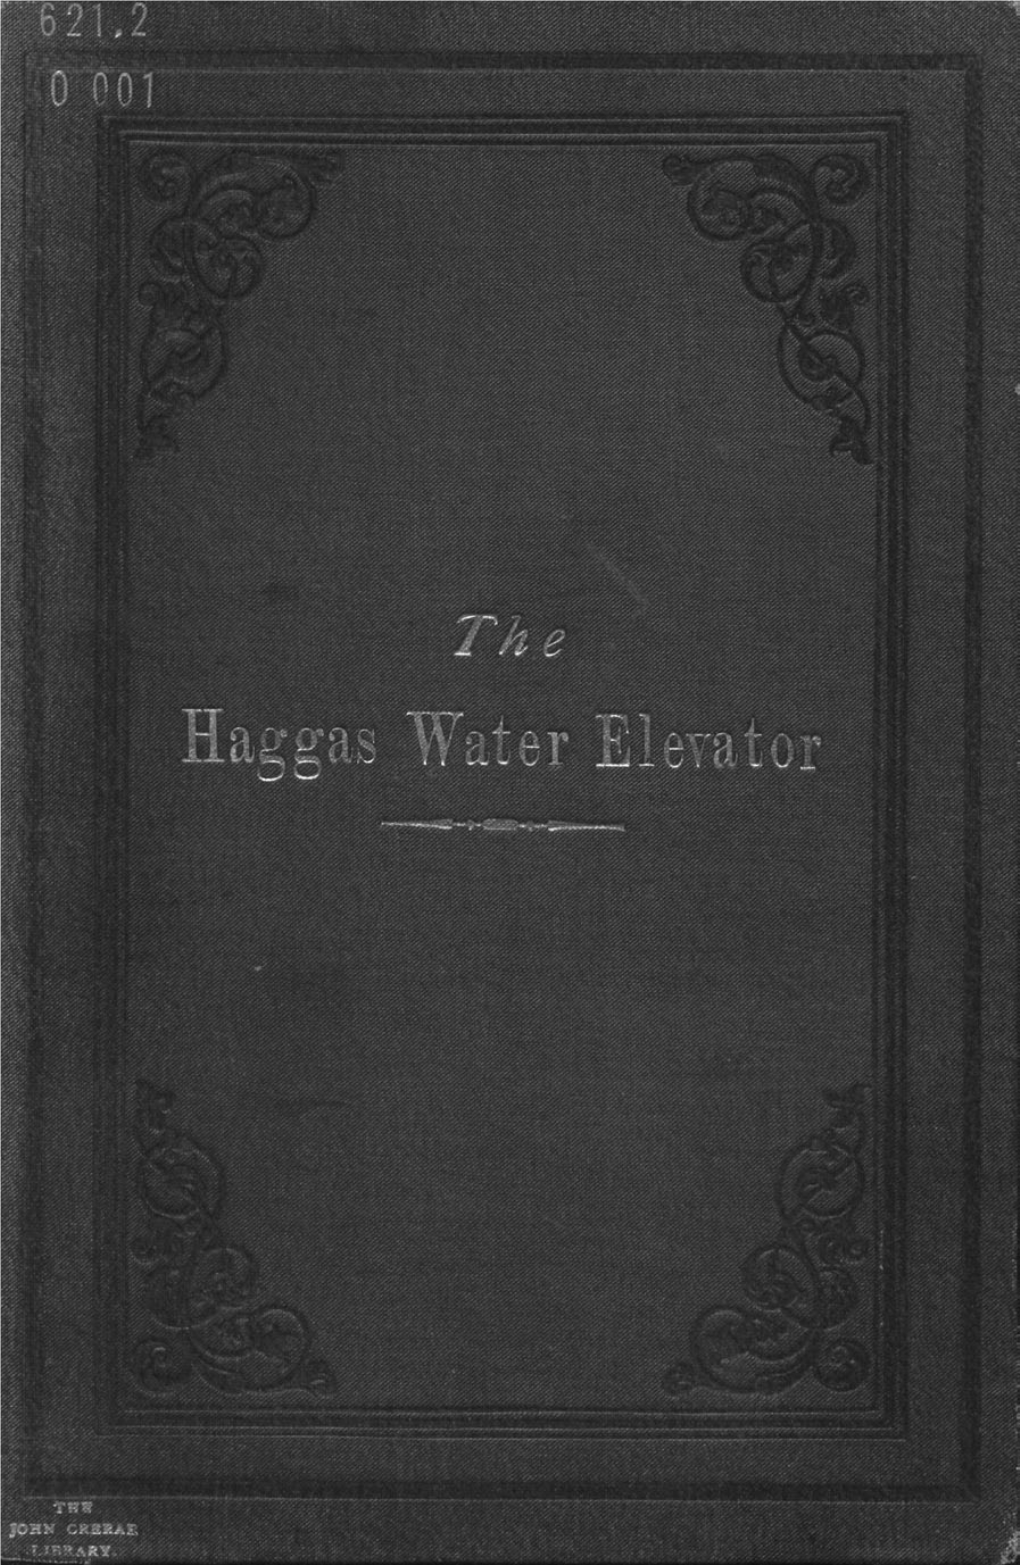 Haggas Water Elevator"